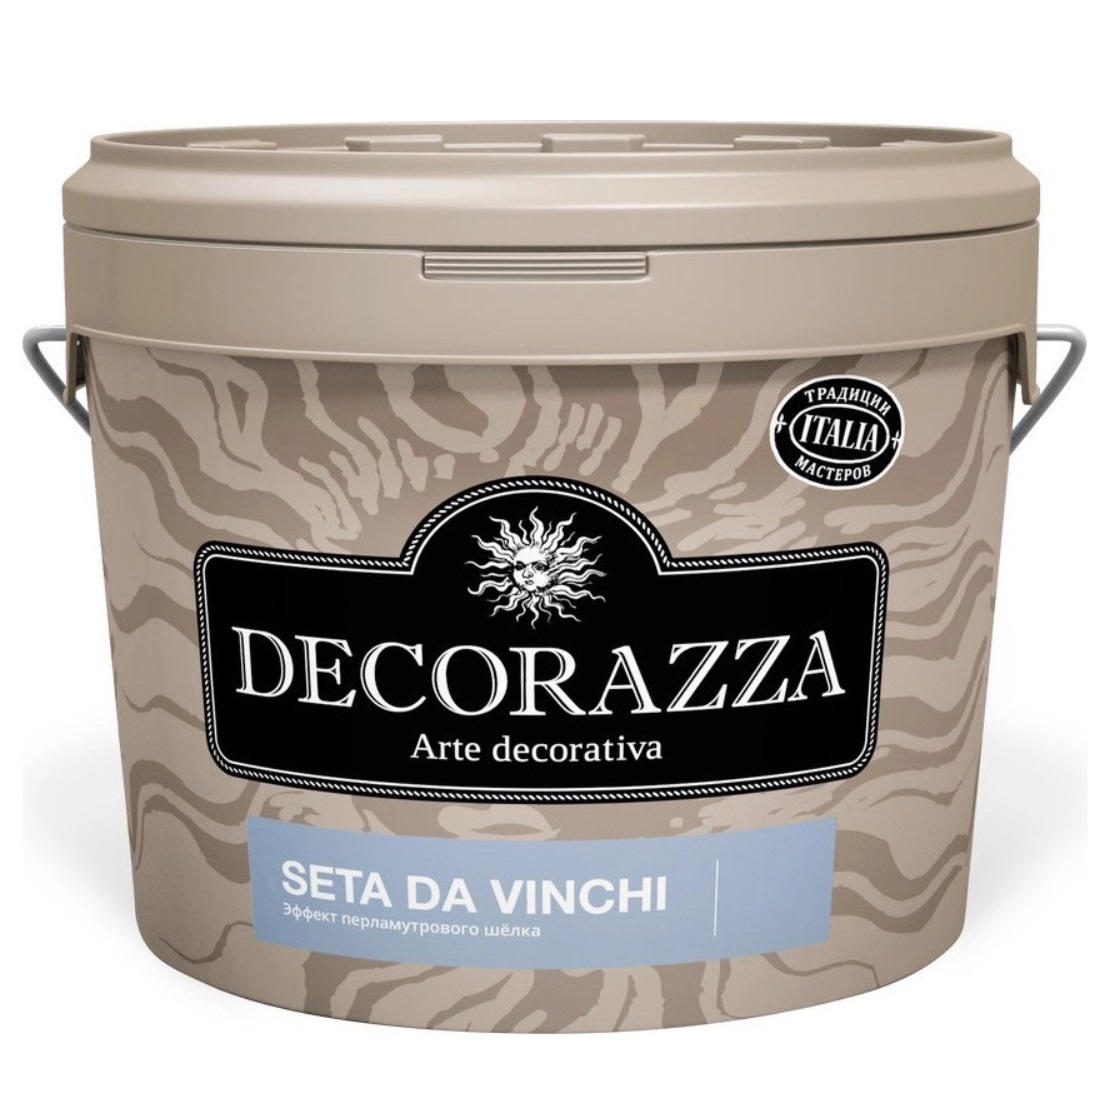 фото Декоративное покрытие с более выраженным эффектом перламутрового шёлка decorazza dz seta da vinci sd 001. 5 кг